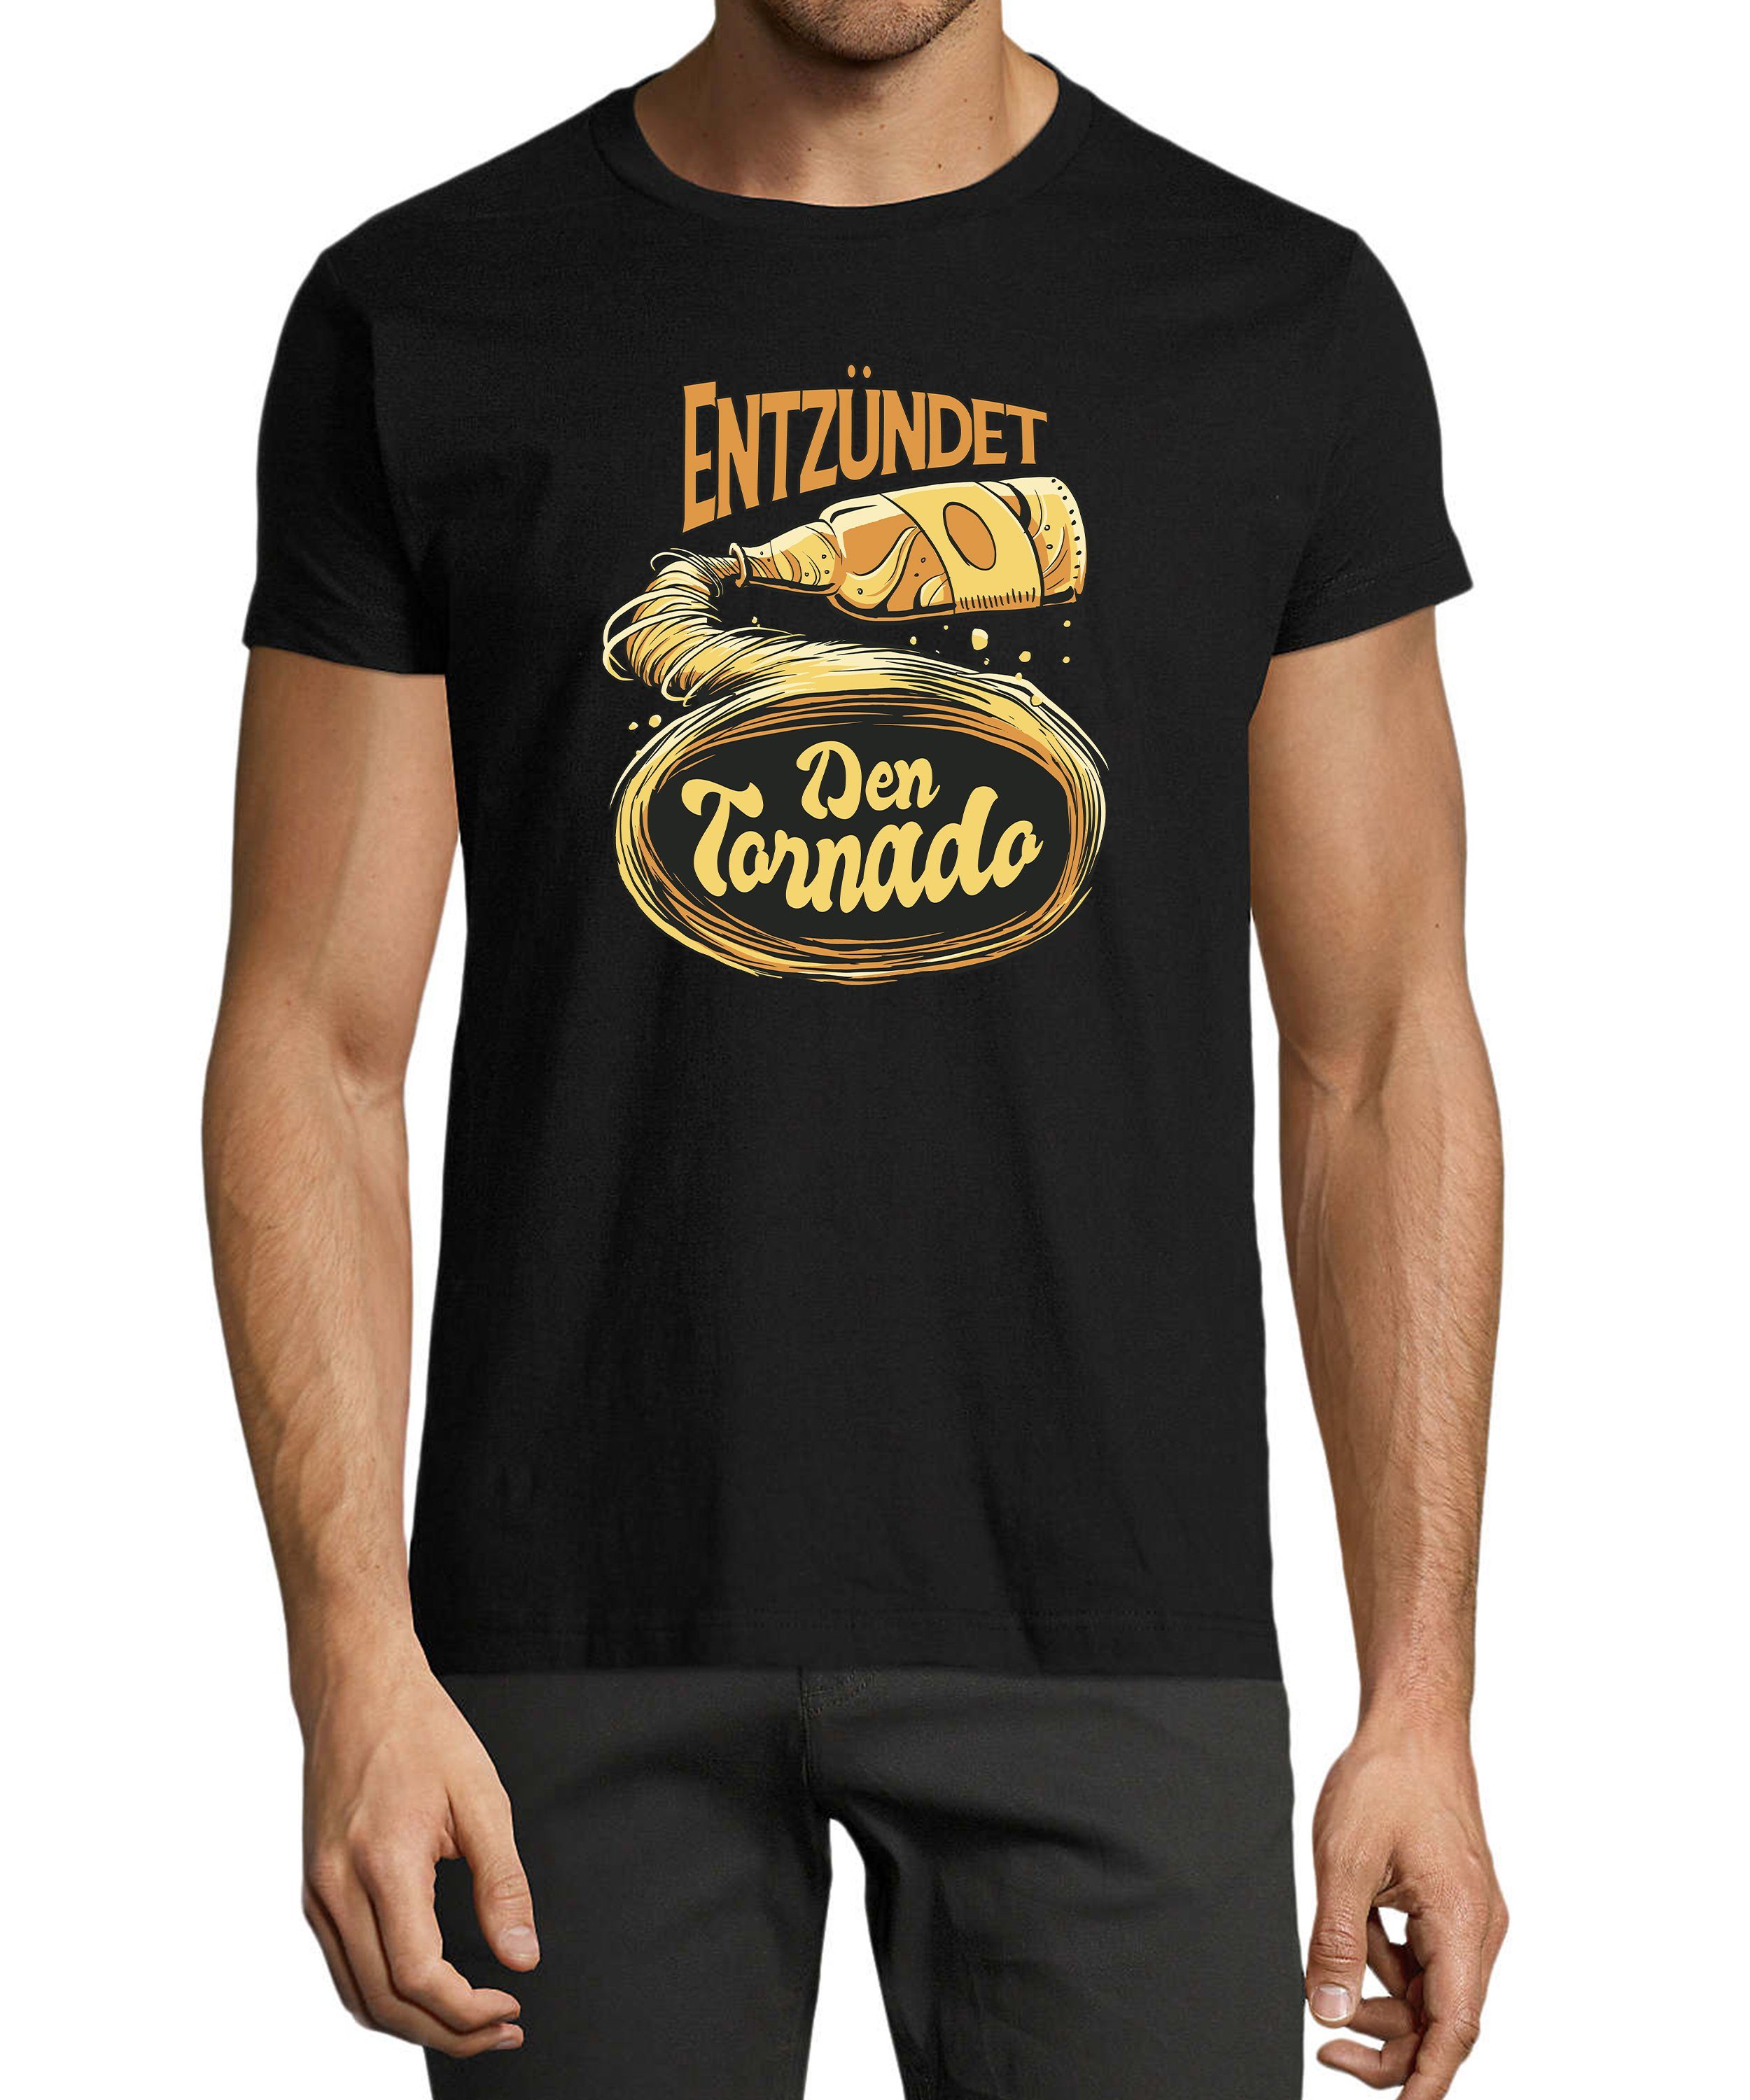 MyDesign24 T-Shirt Herren Fun Print Shirt - Oktoberfest Trinkshirt Entzündet den Tornado Baumwollshirt mit Aufdruck Regular Fit, i302 schwarz